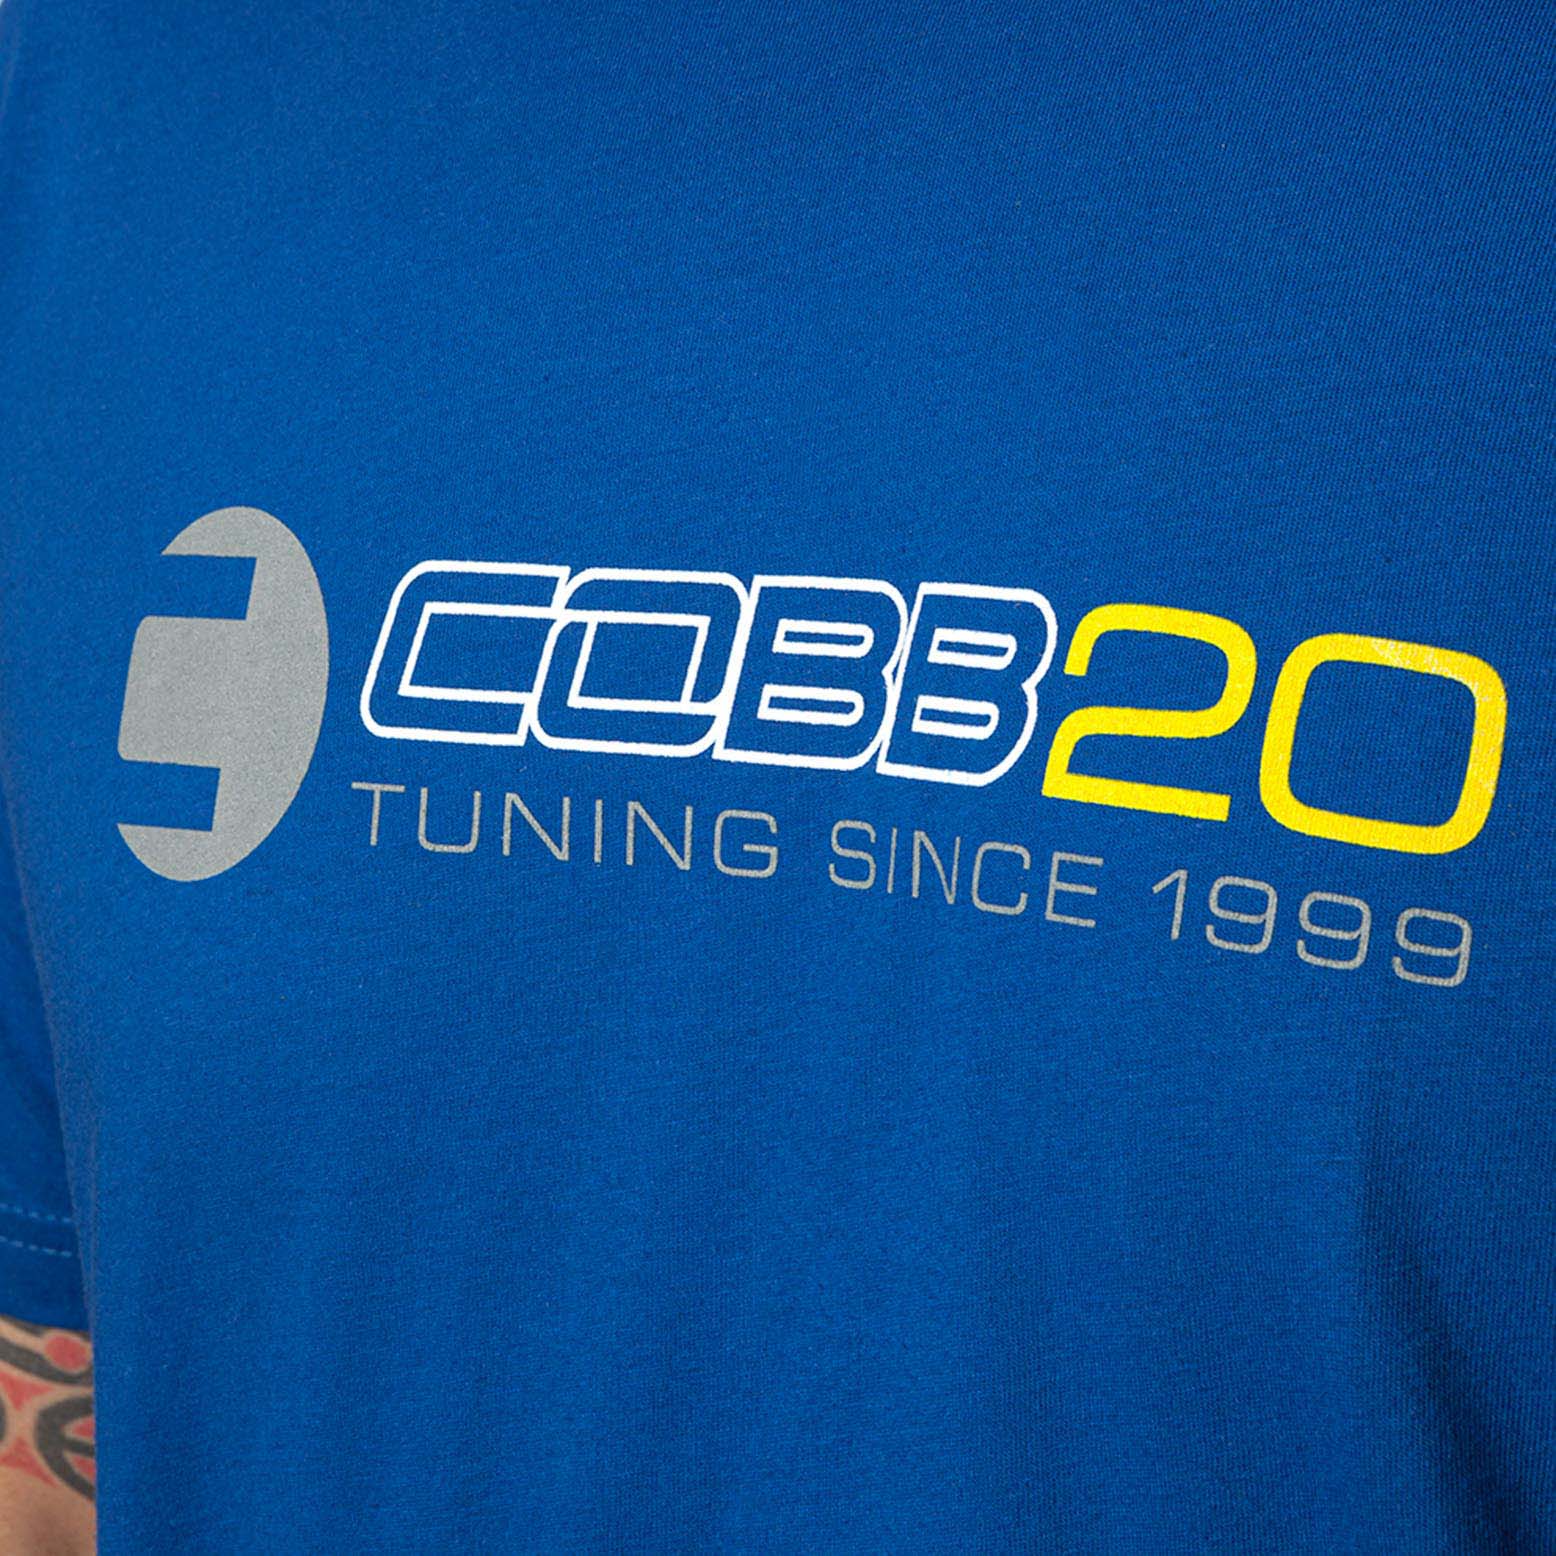 COBB 20 Anniversary Shirt